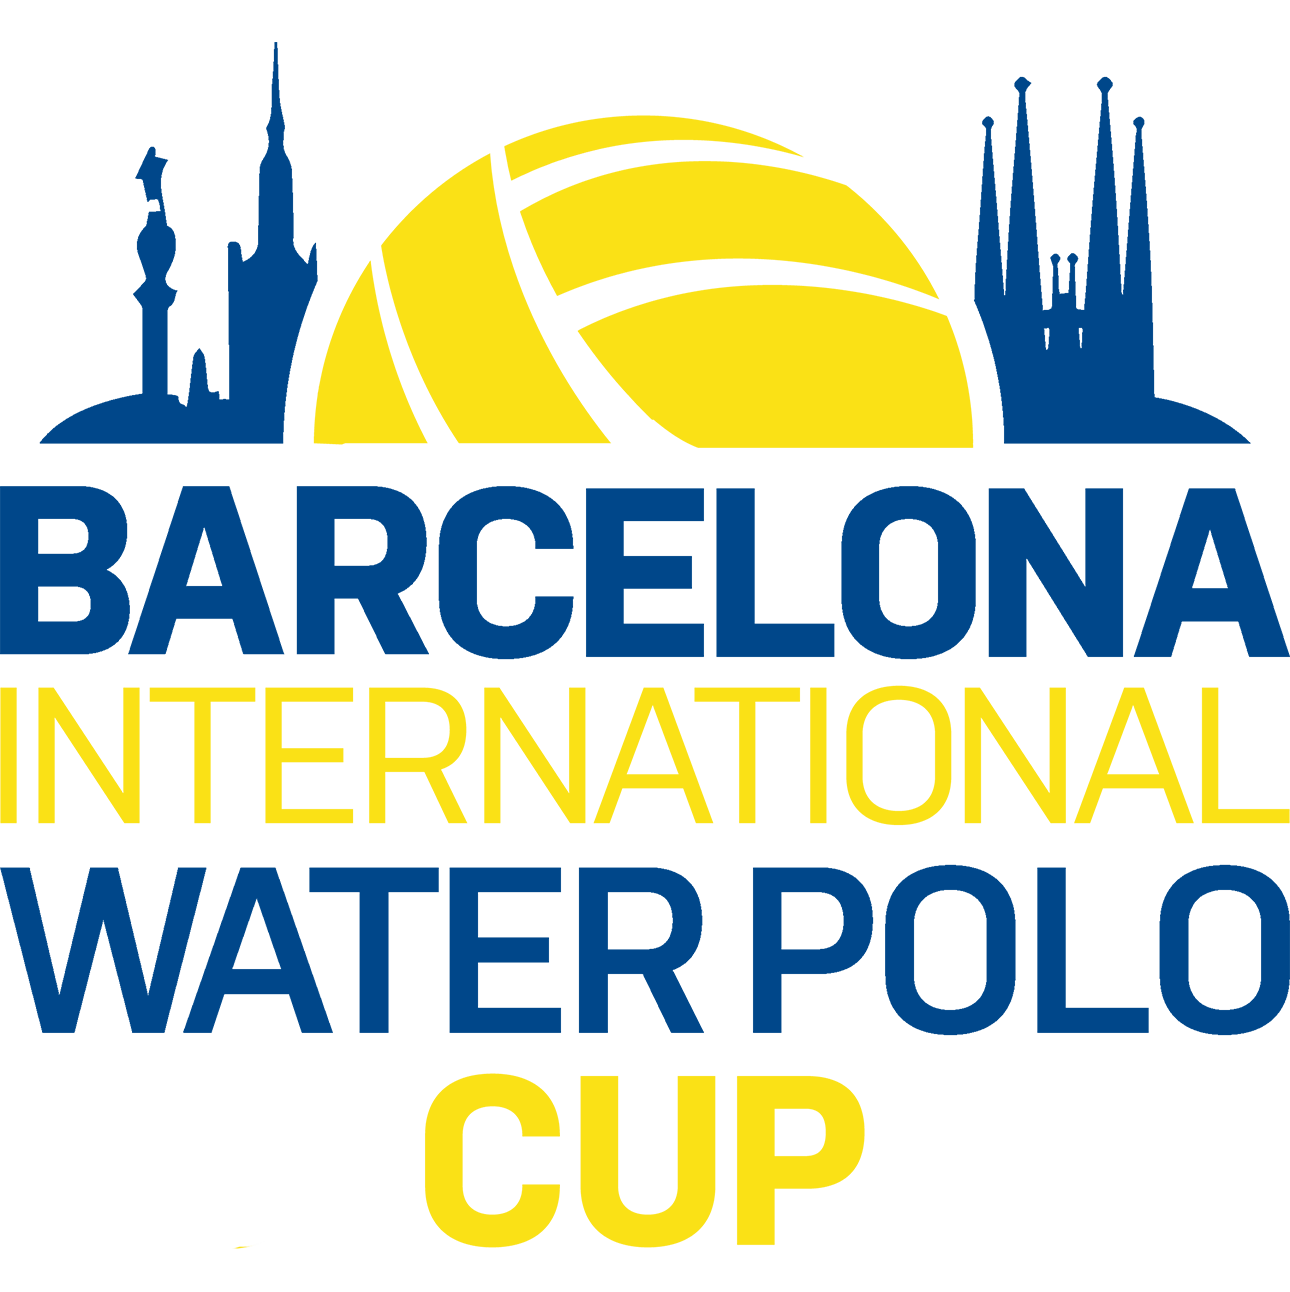 BIWPA_BarcelonaCup_Logotype_Blue_2